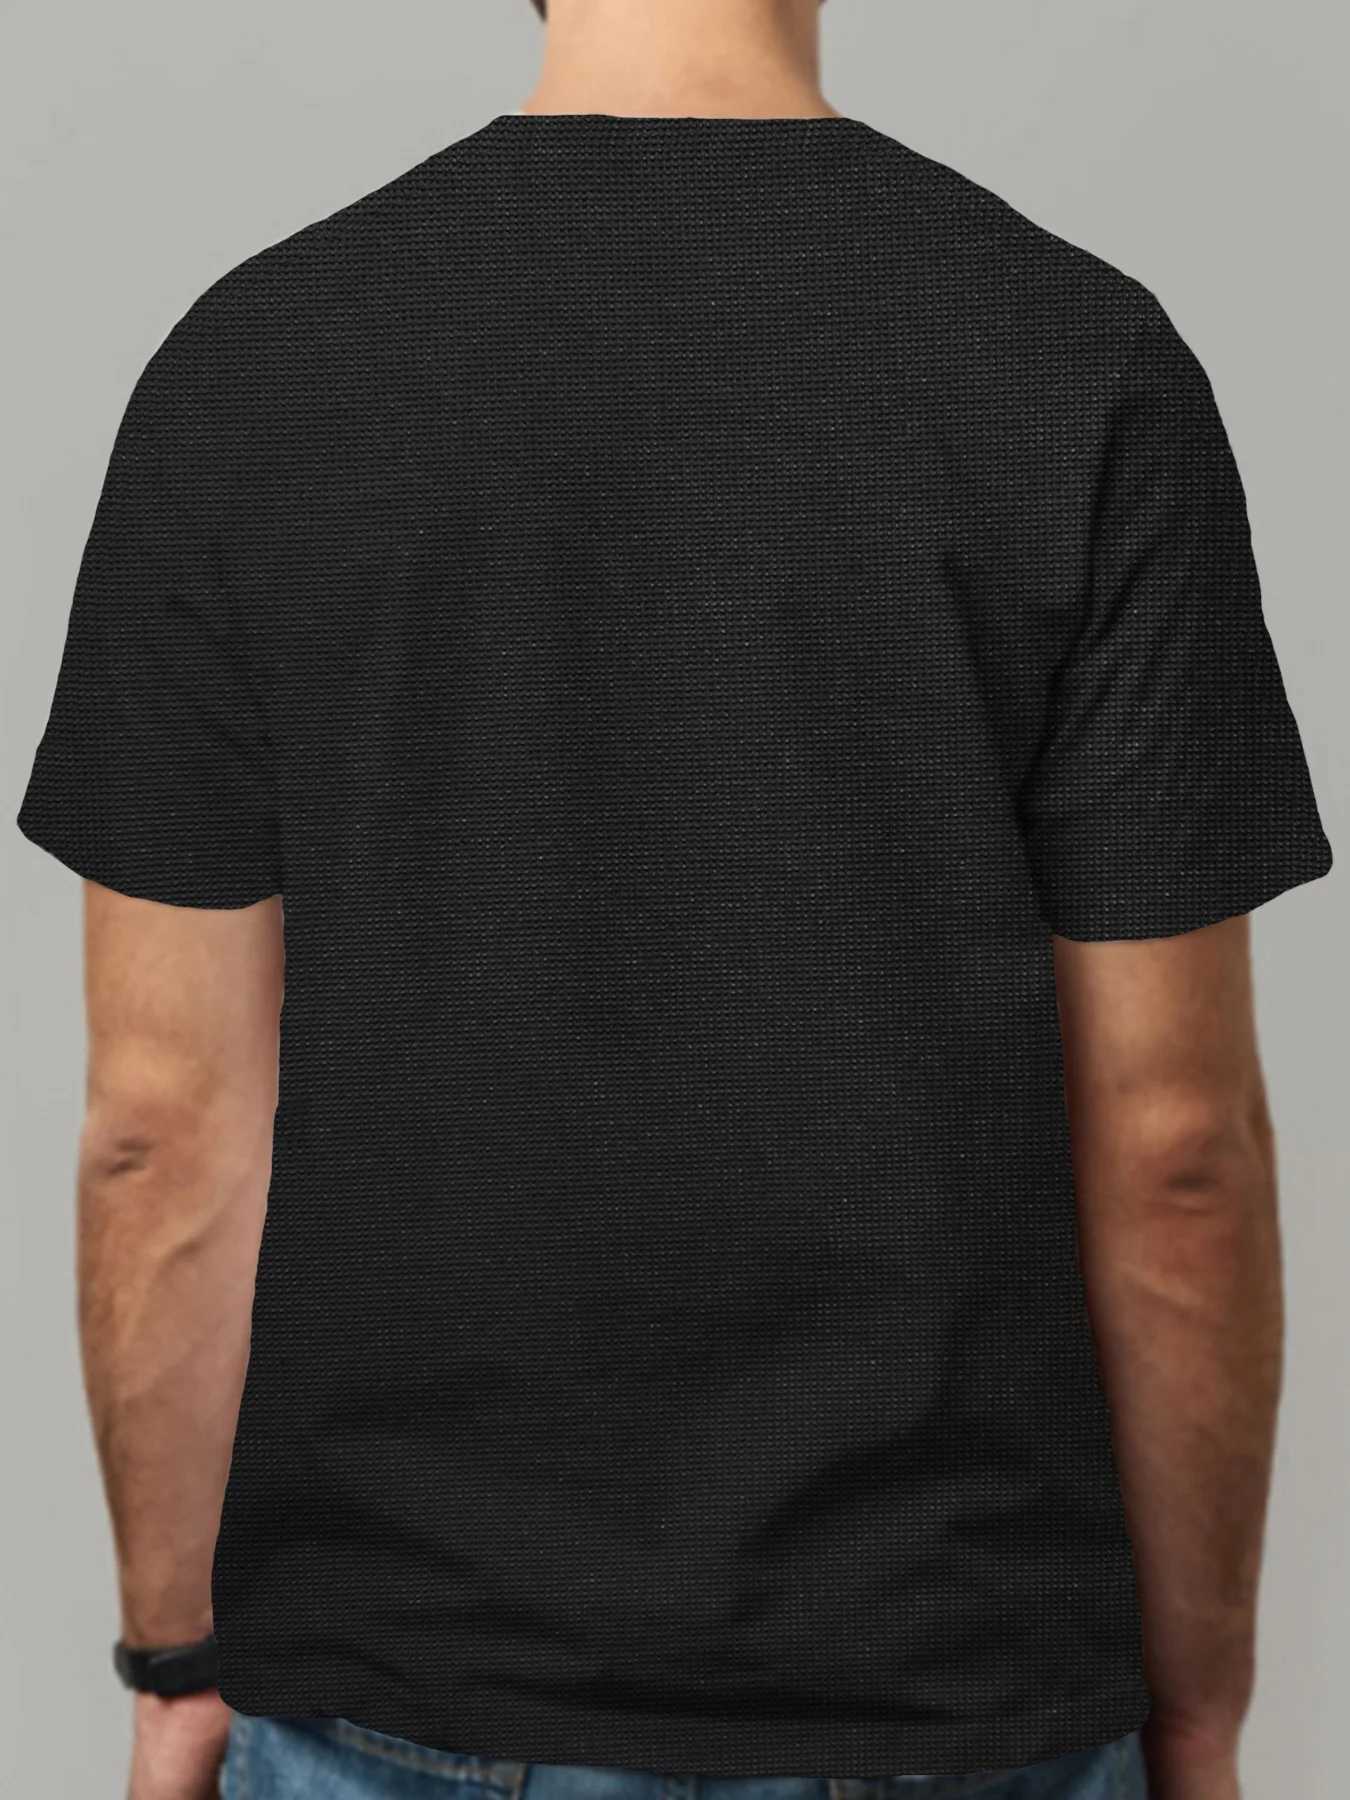 Męskie koszulki inżynier koszulki mózgowej inżynier elektreklacyjny Grad tee Tee Funny Inżynieria Powiedz, że koszulka maniak tato koszulka komputerowa tee